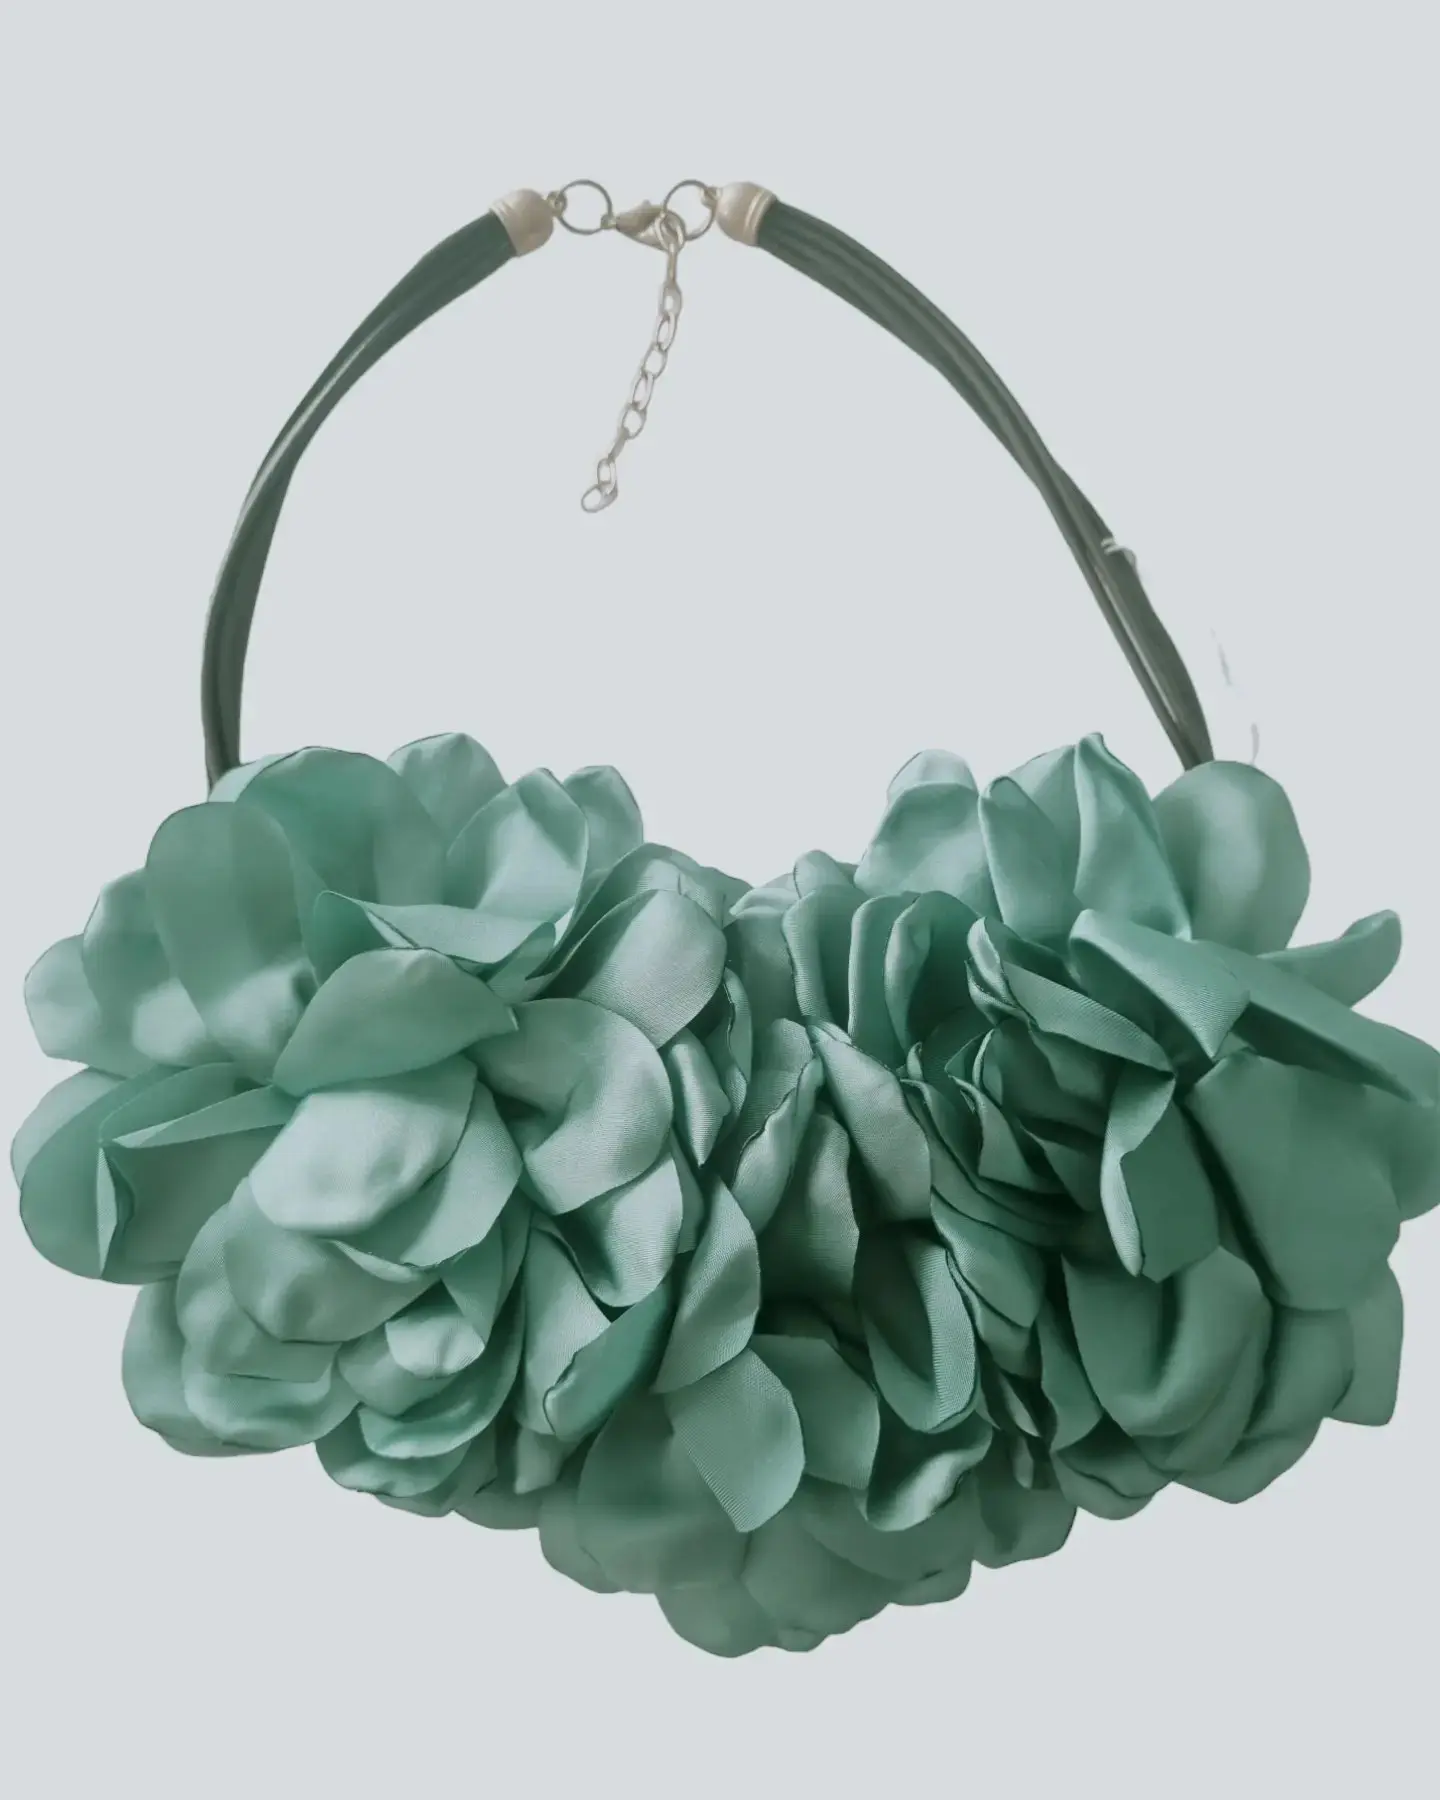 Halskette mit Stoffblumen. Verstellbare Länge: 58 cm. Grüne Farbe